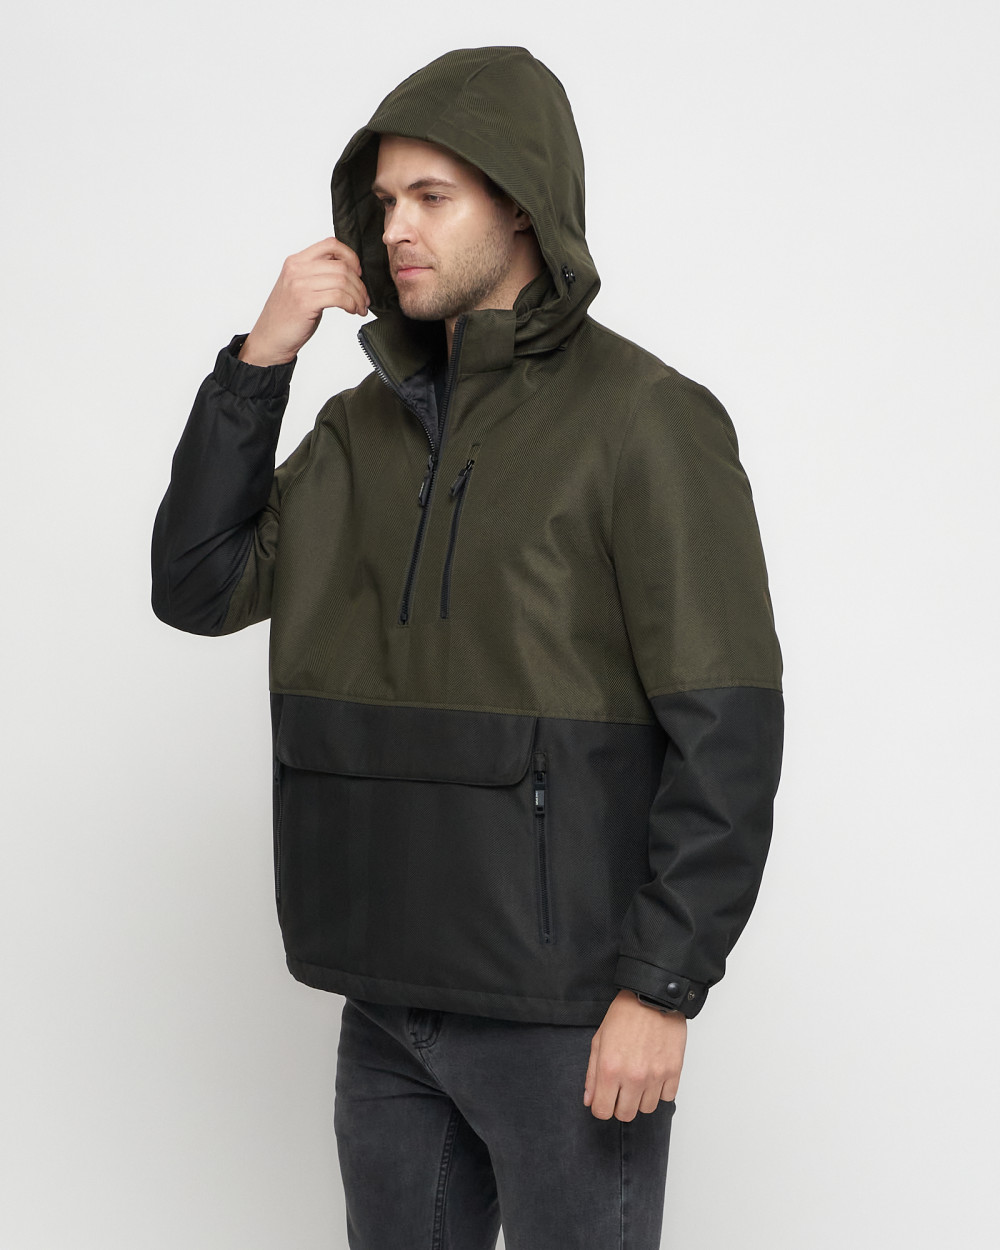 Купить куртку анорак спортивную мужскую оптом от производителя недорого в Москве 3307Kh 1